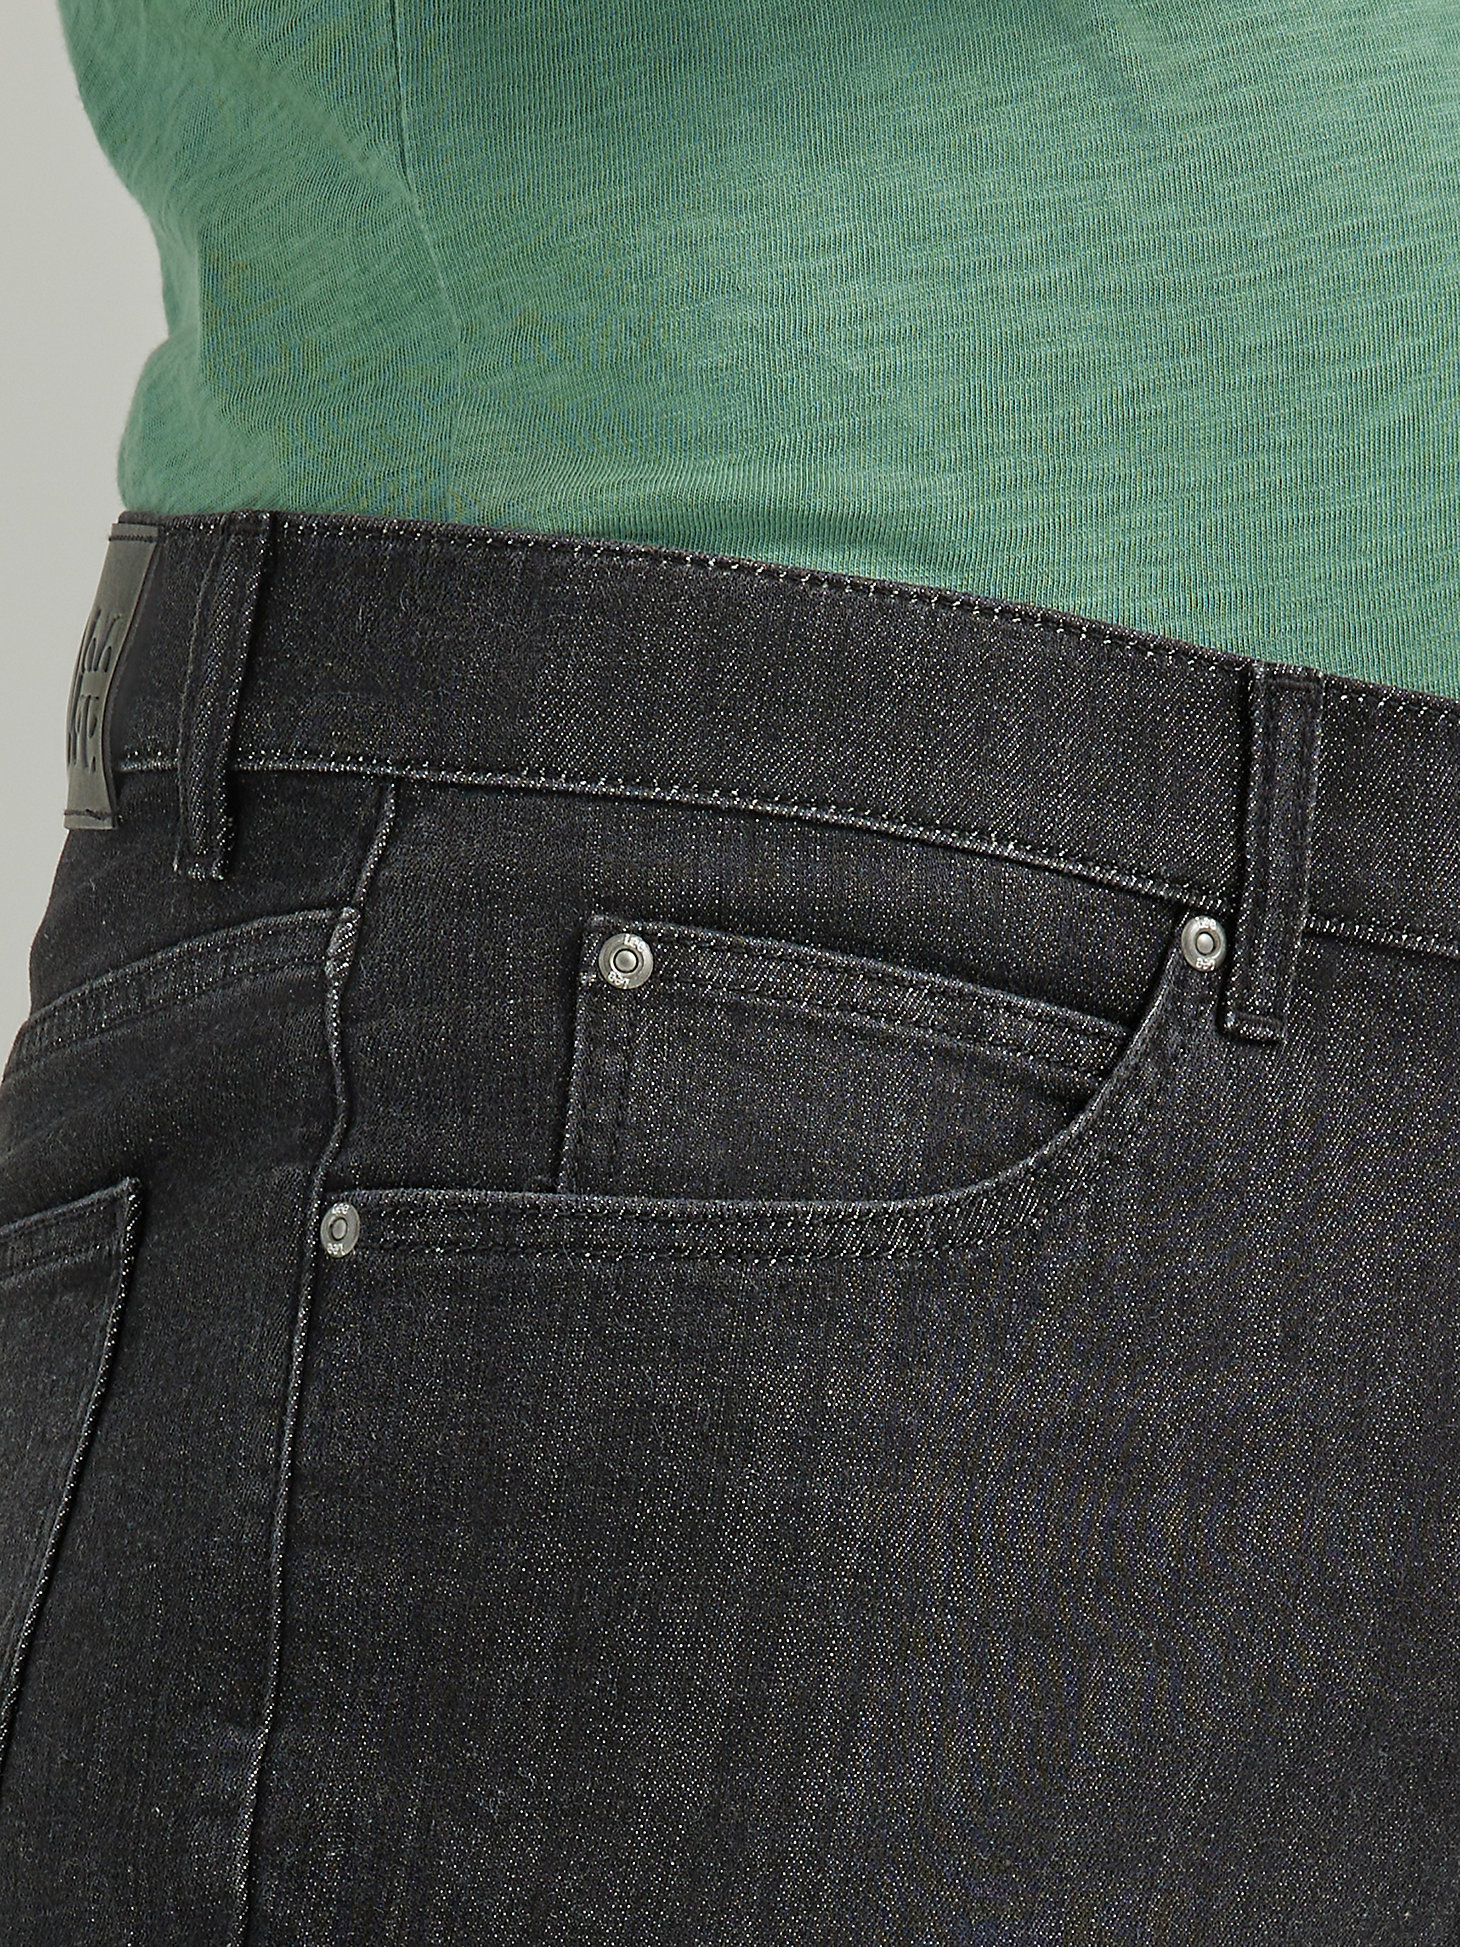 Men's Legendary Regular Fit 5- Pocket Short in Washed Black alternative view 3